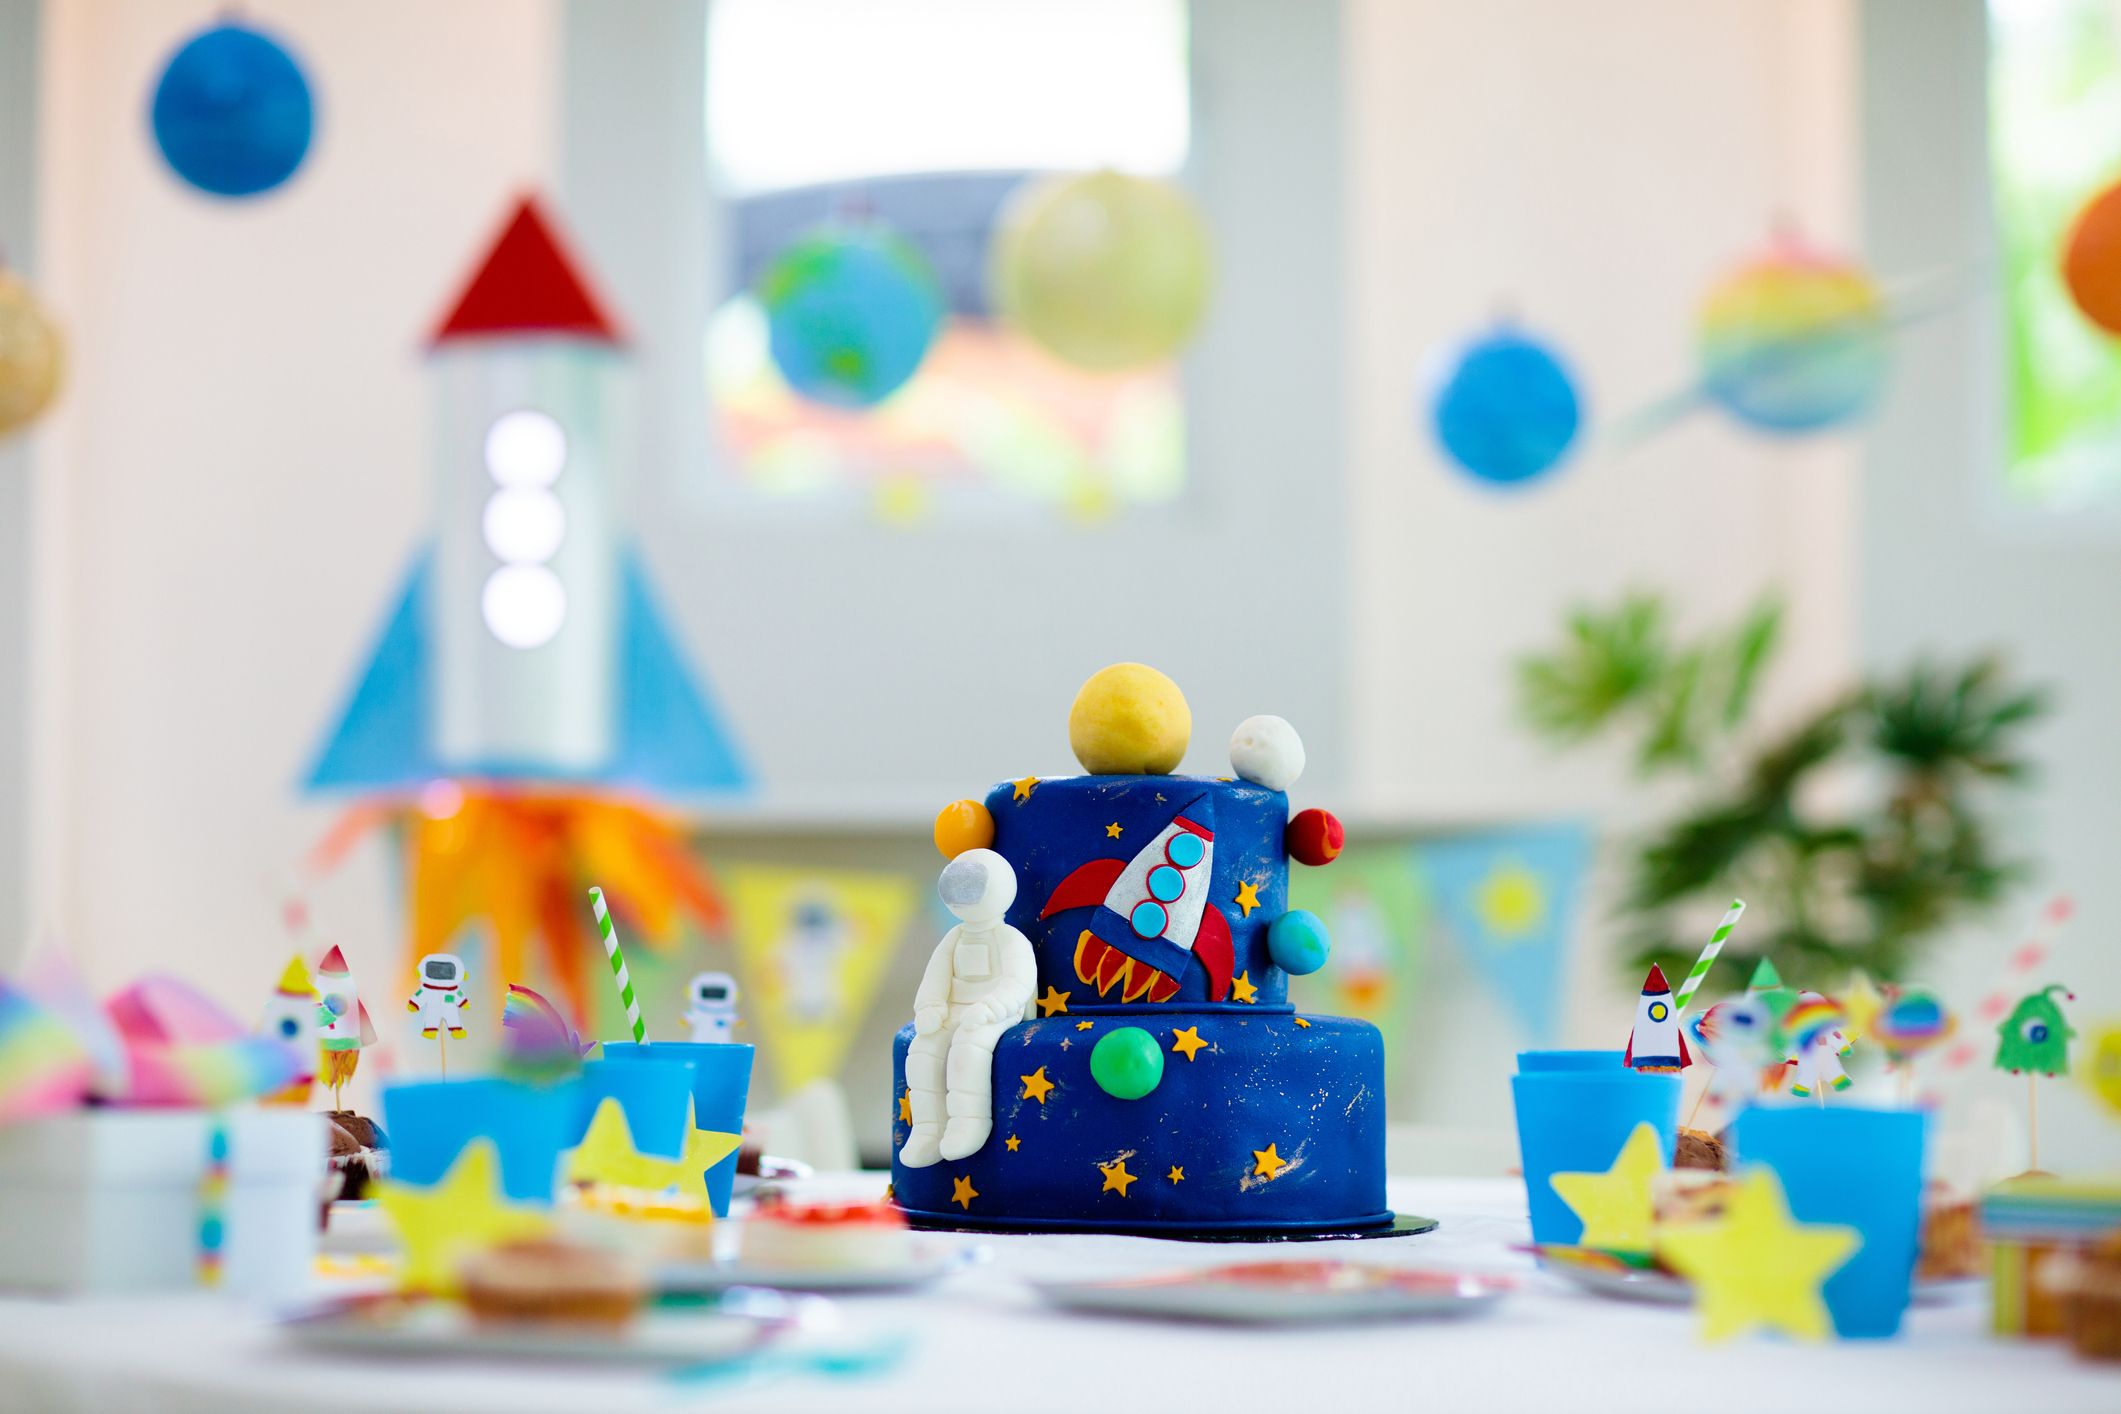 20 Dinosaur Birthday Party Ideas - Simple & Fun